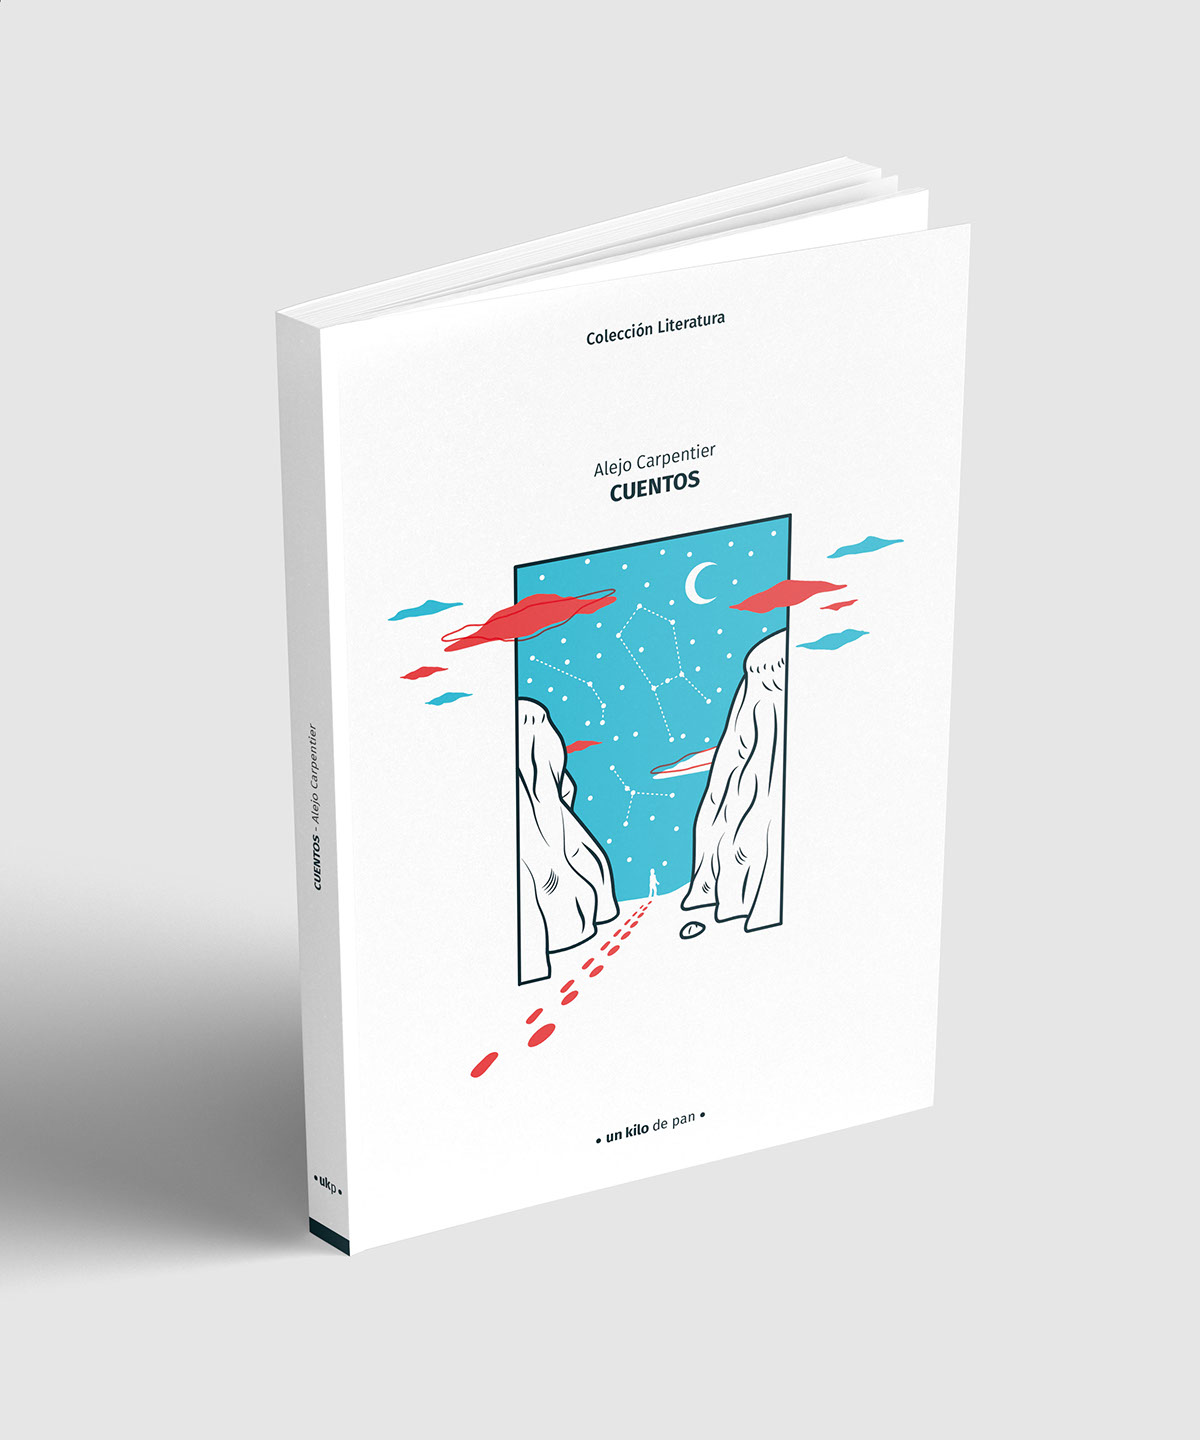 cover book ILLUSTRATION  ilustracion diseño gráfico graphic design  editorial literatura libros libro